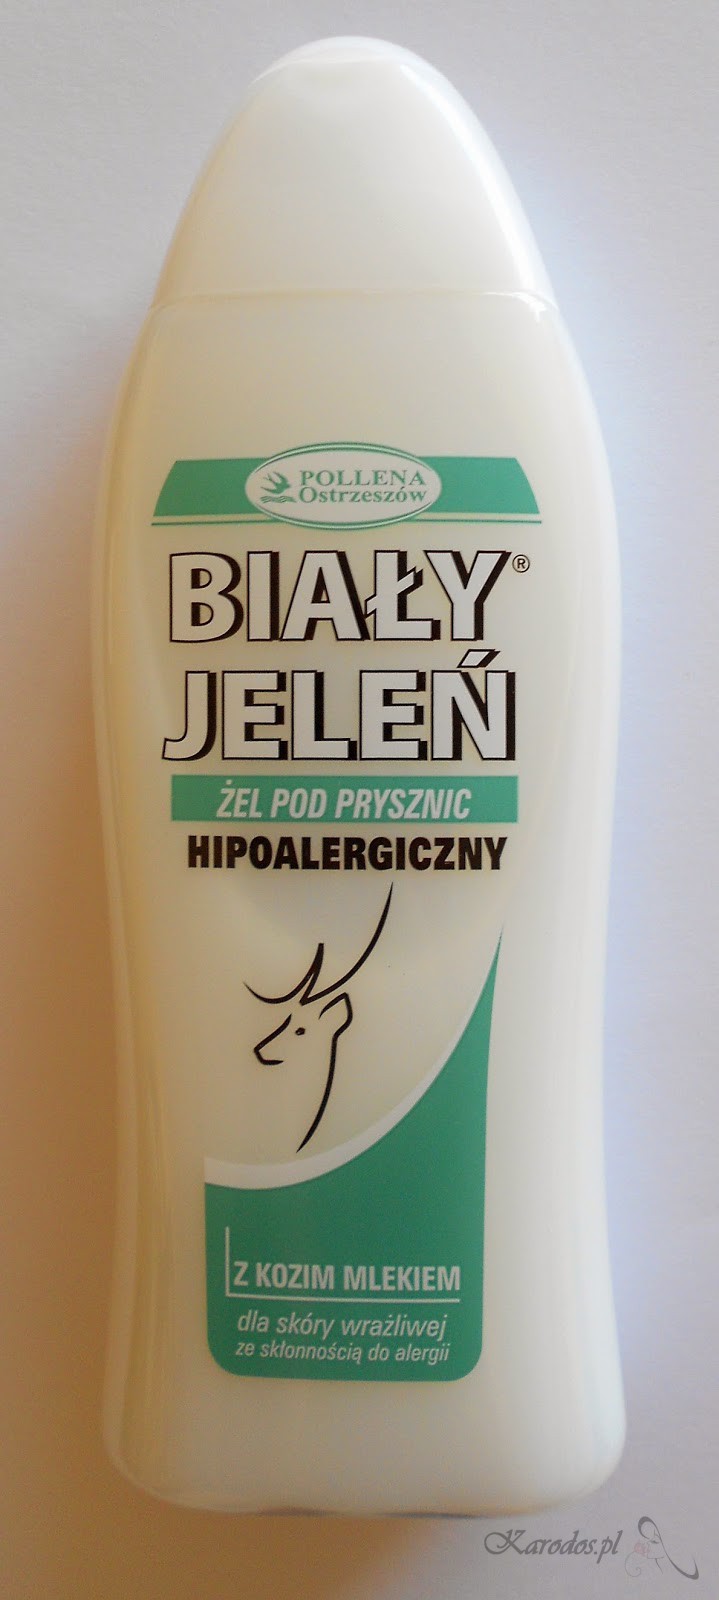 Pollena Ostrzeszów, Biały Jeleń - Hipoalergiczny żel pod prysznic z kozim mlekiem